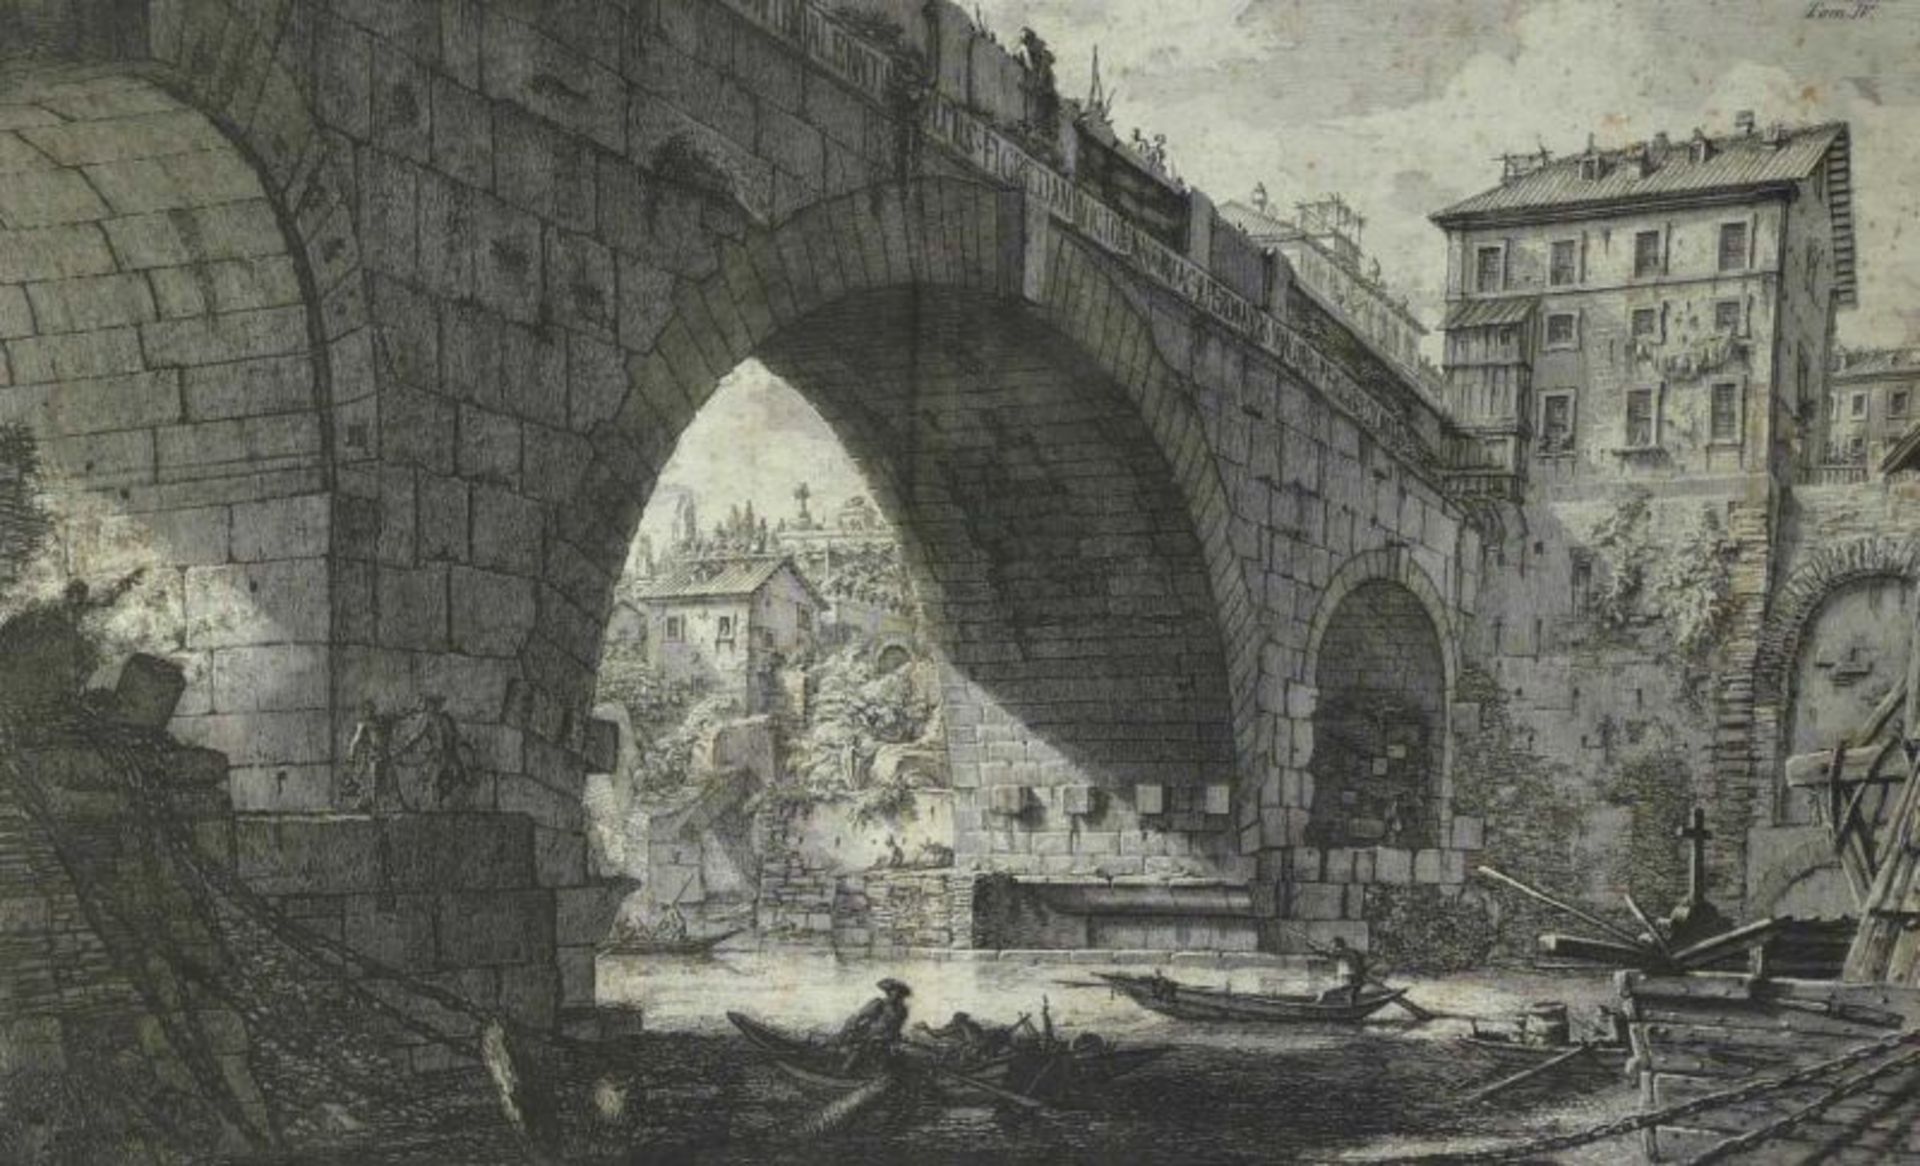 Piranesi, Giovanni-Battista "Veduta del Ponte Ferrato dagl' Antiquari detto Cestio" (Mogliano 1720-